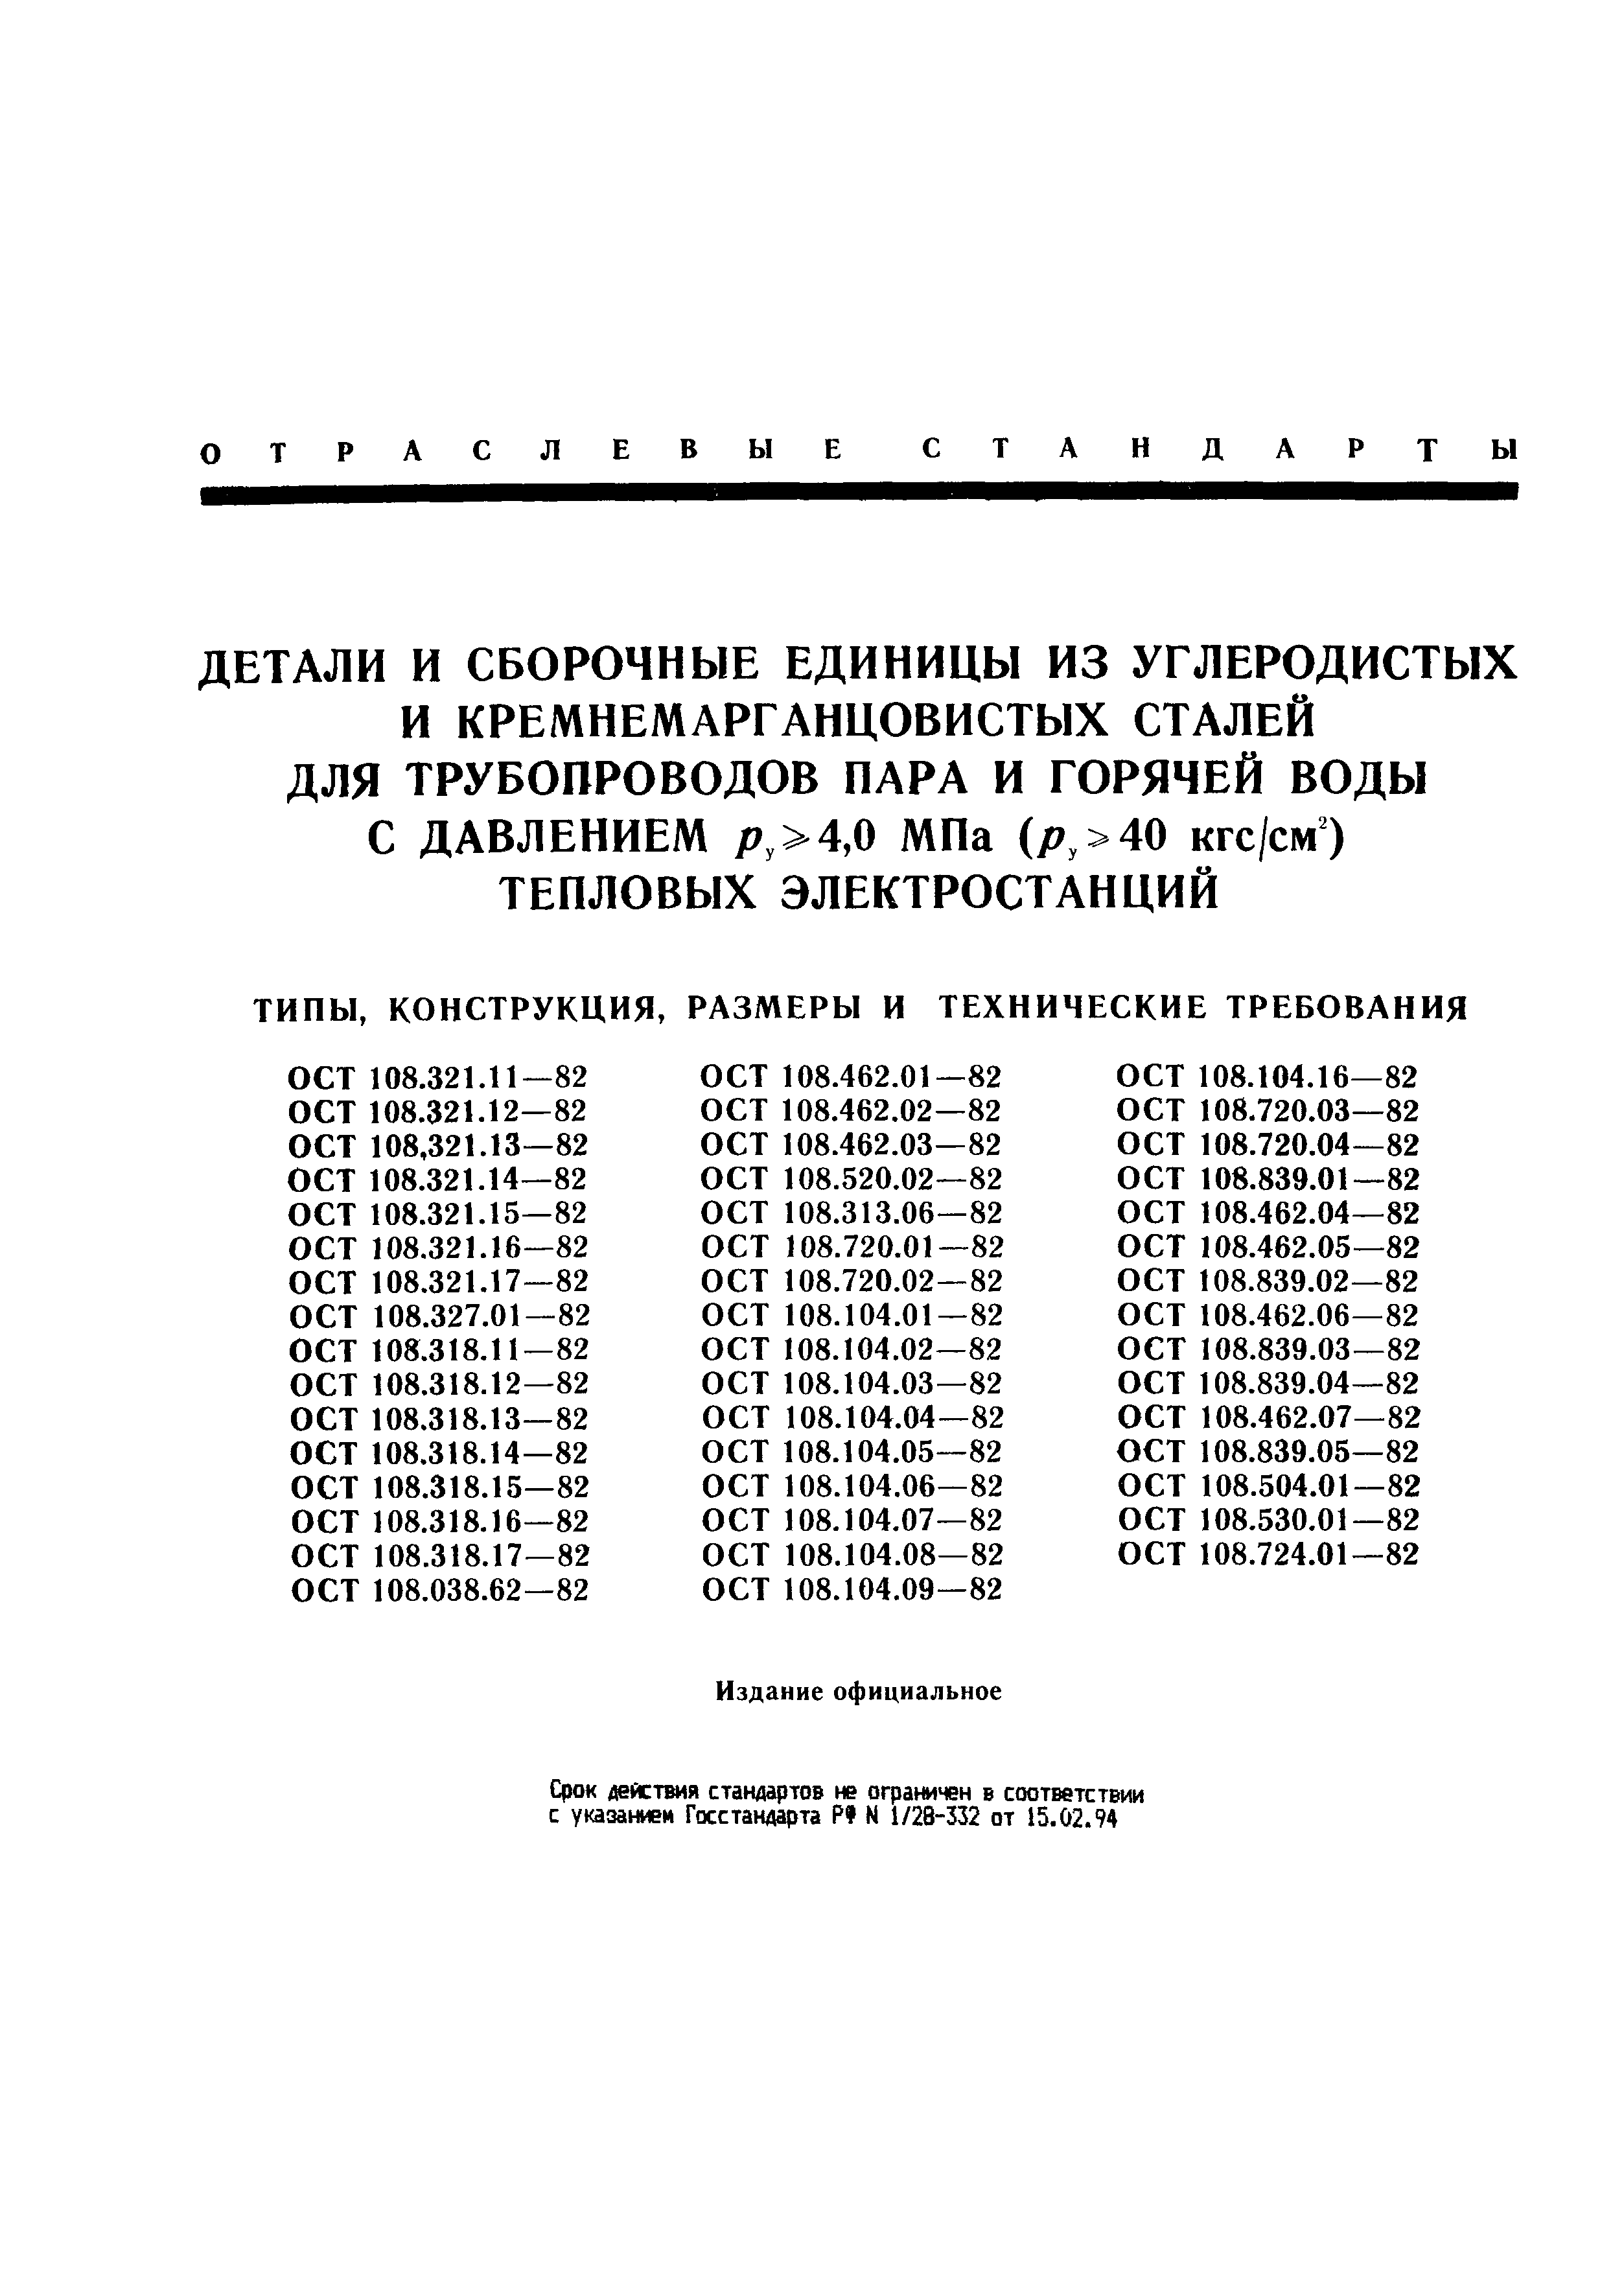 ОСТ 108.321.13-82